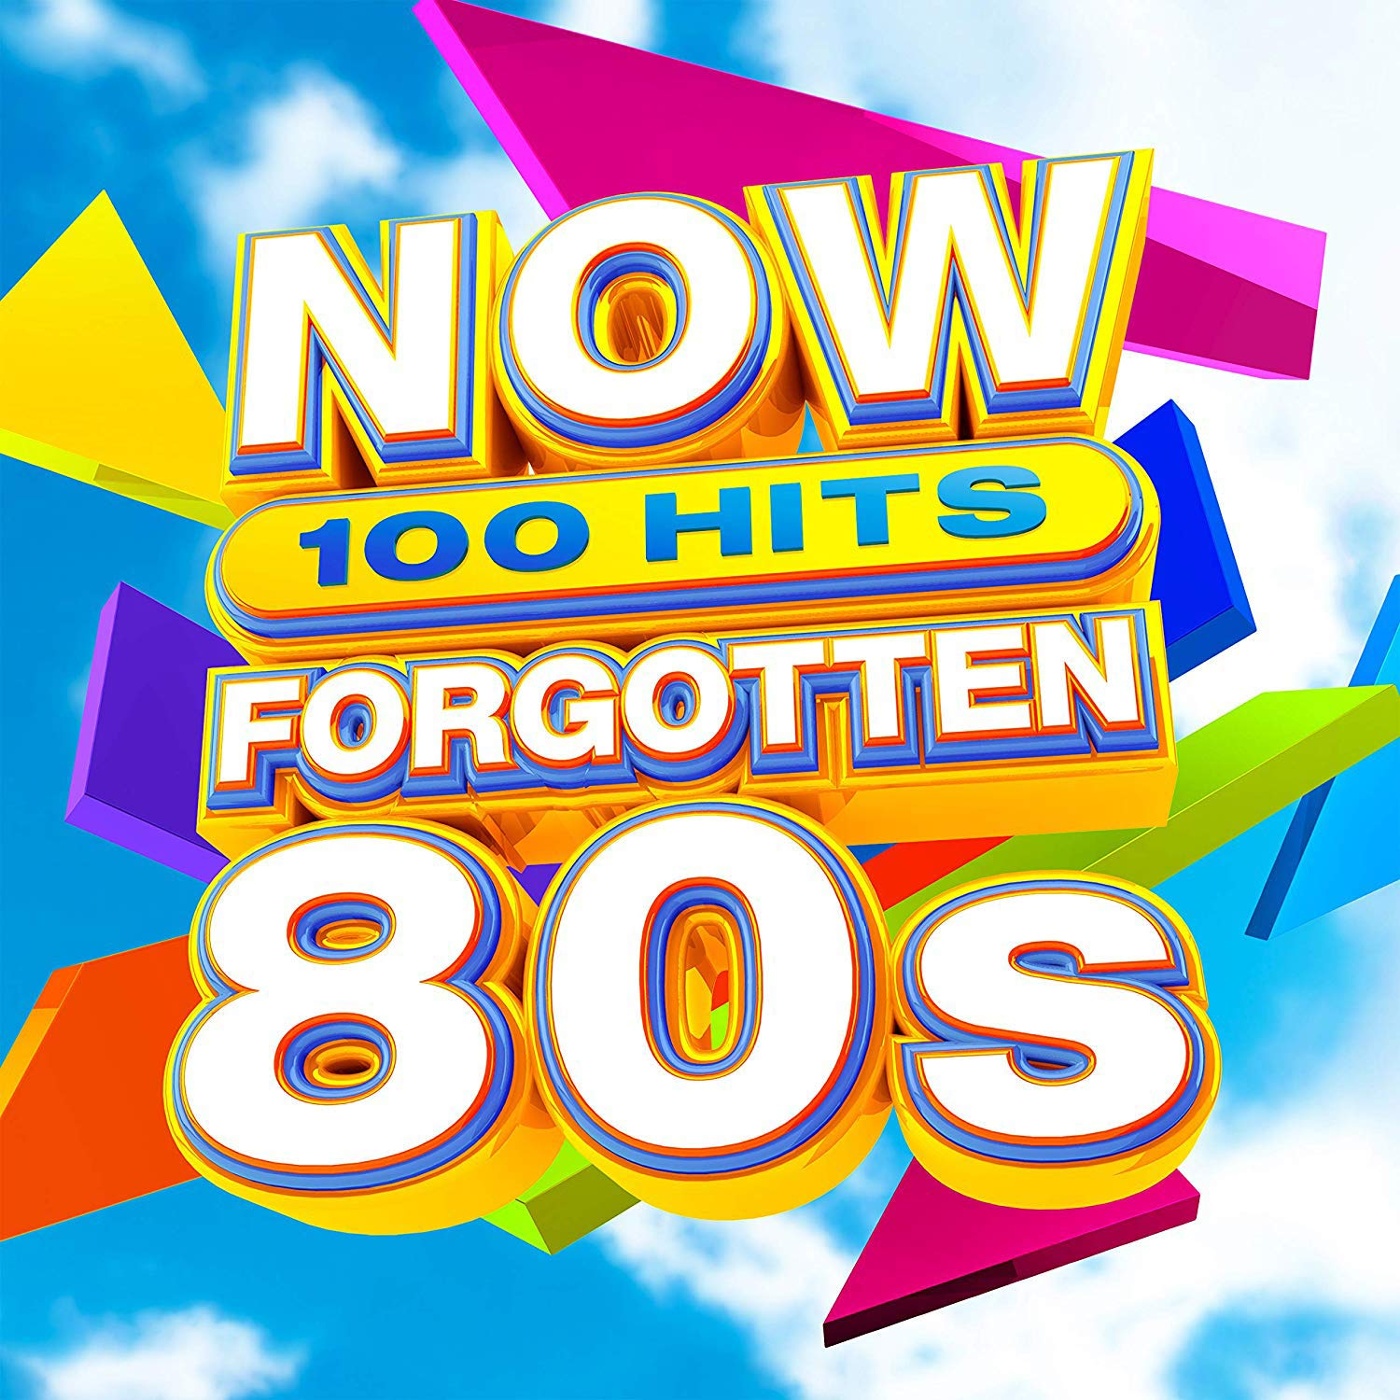 Купить альбом VARIOUS ARTISTS - Now 100 Hits Forgotten 80s [6 CD] на компак...